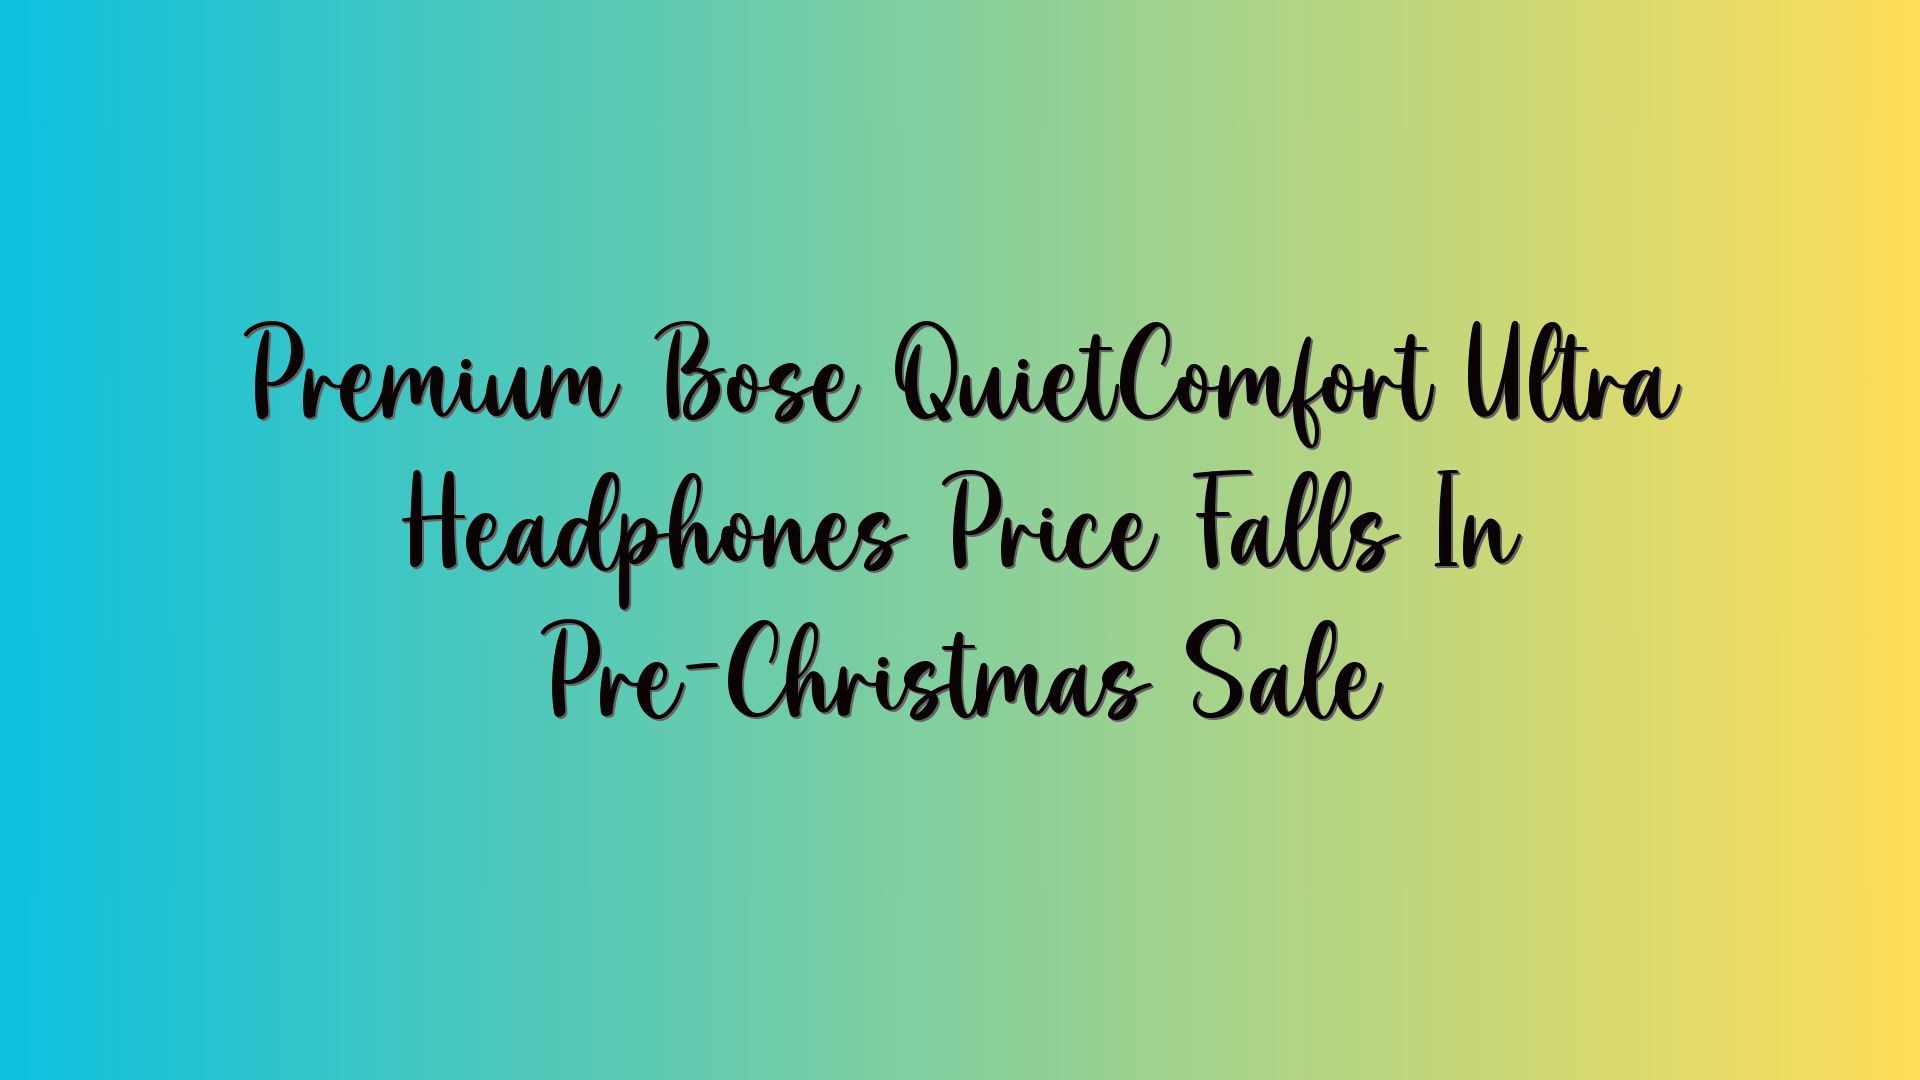 Premium Bose QuietComfort Ultra Headphones Price Falls In Pre-Christmas Sale